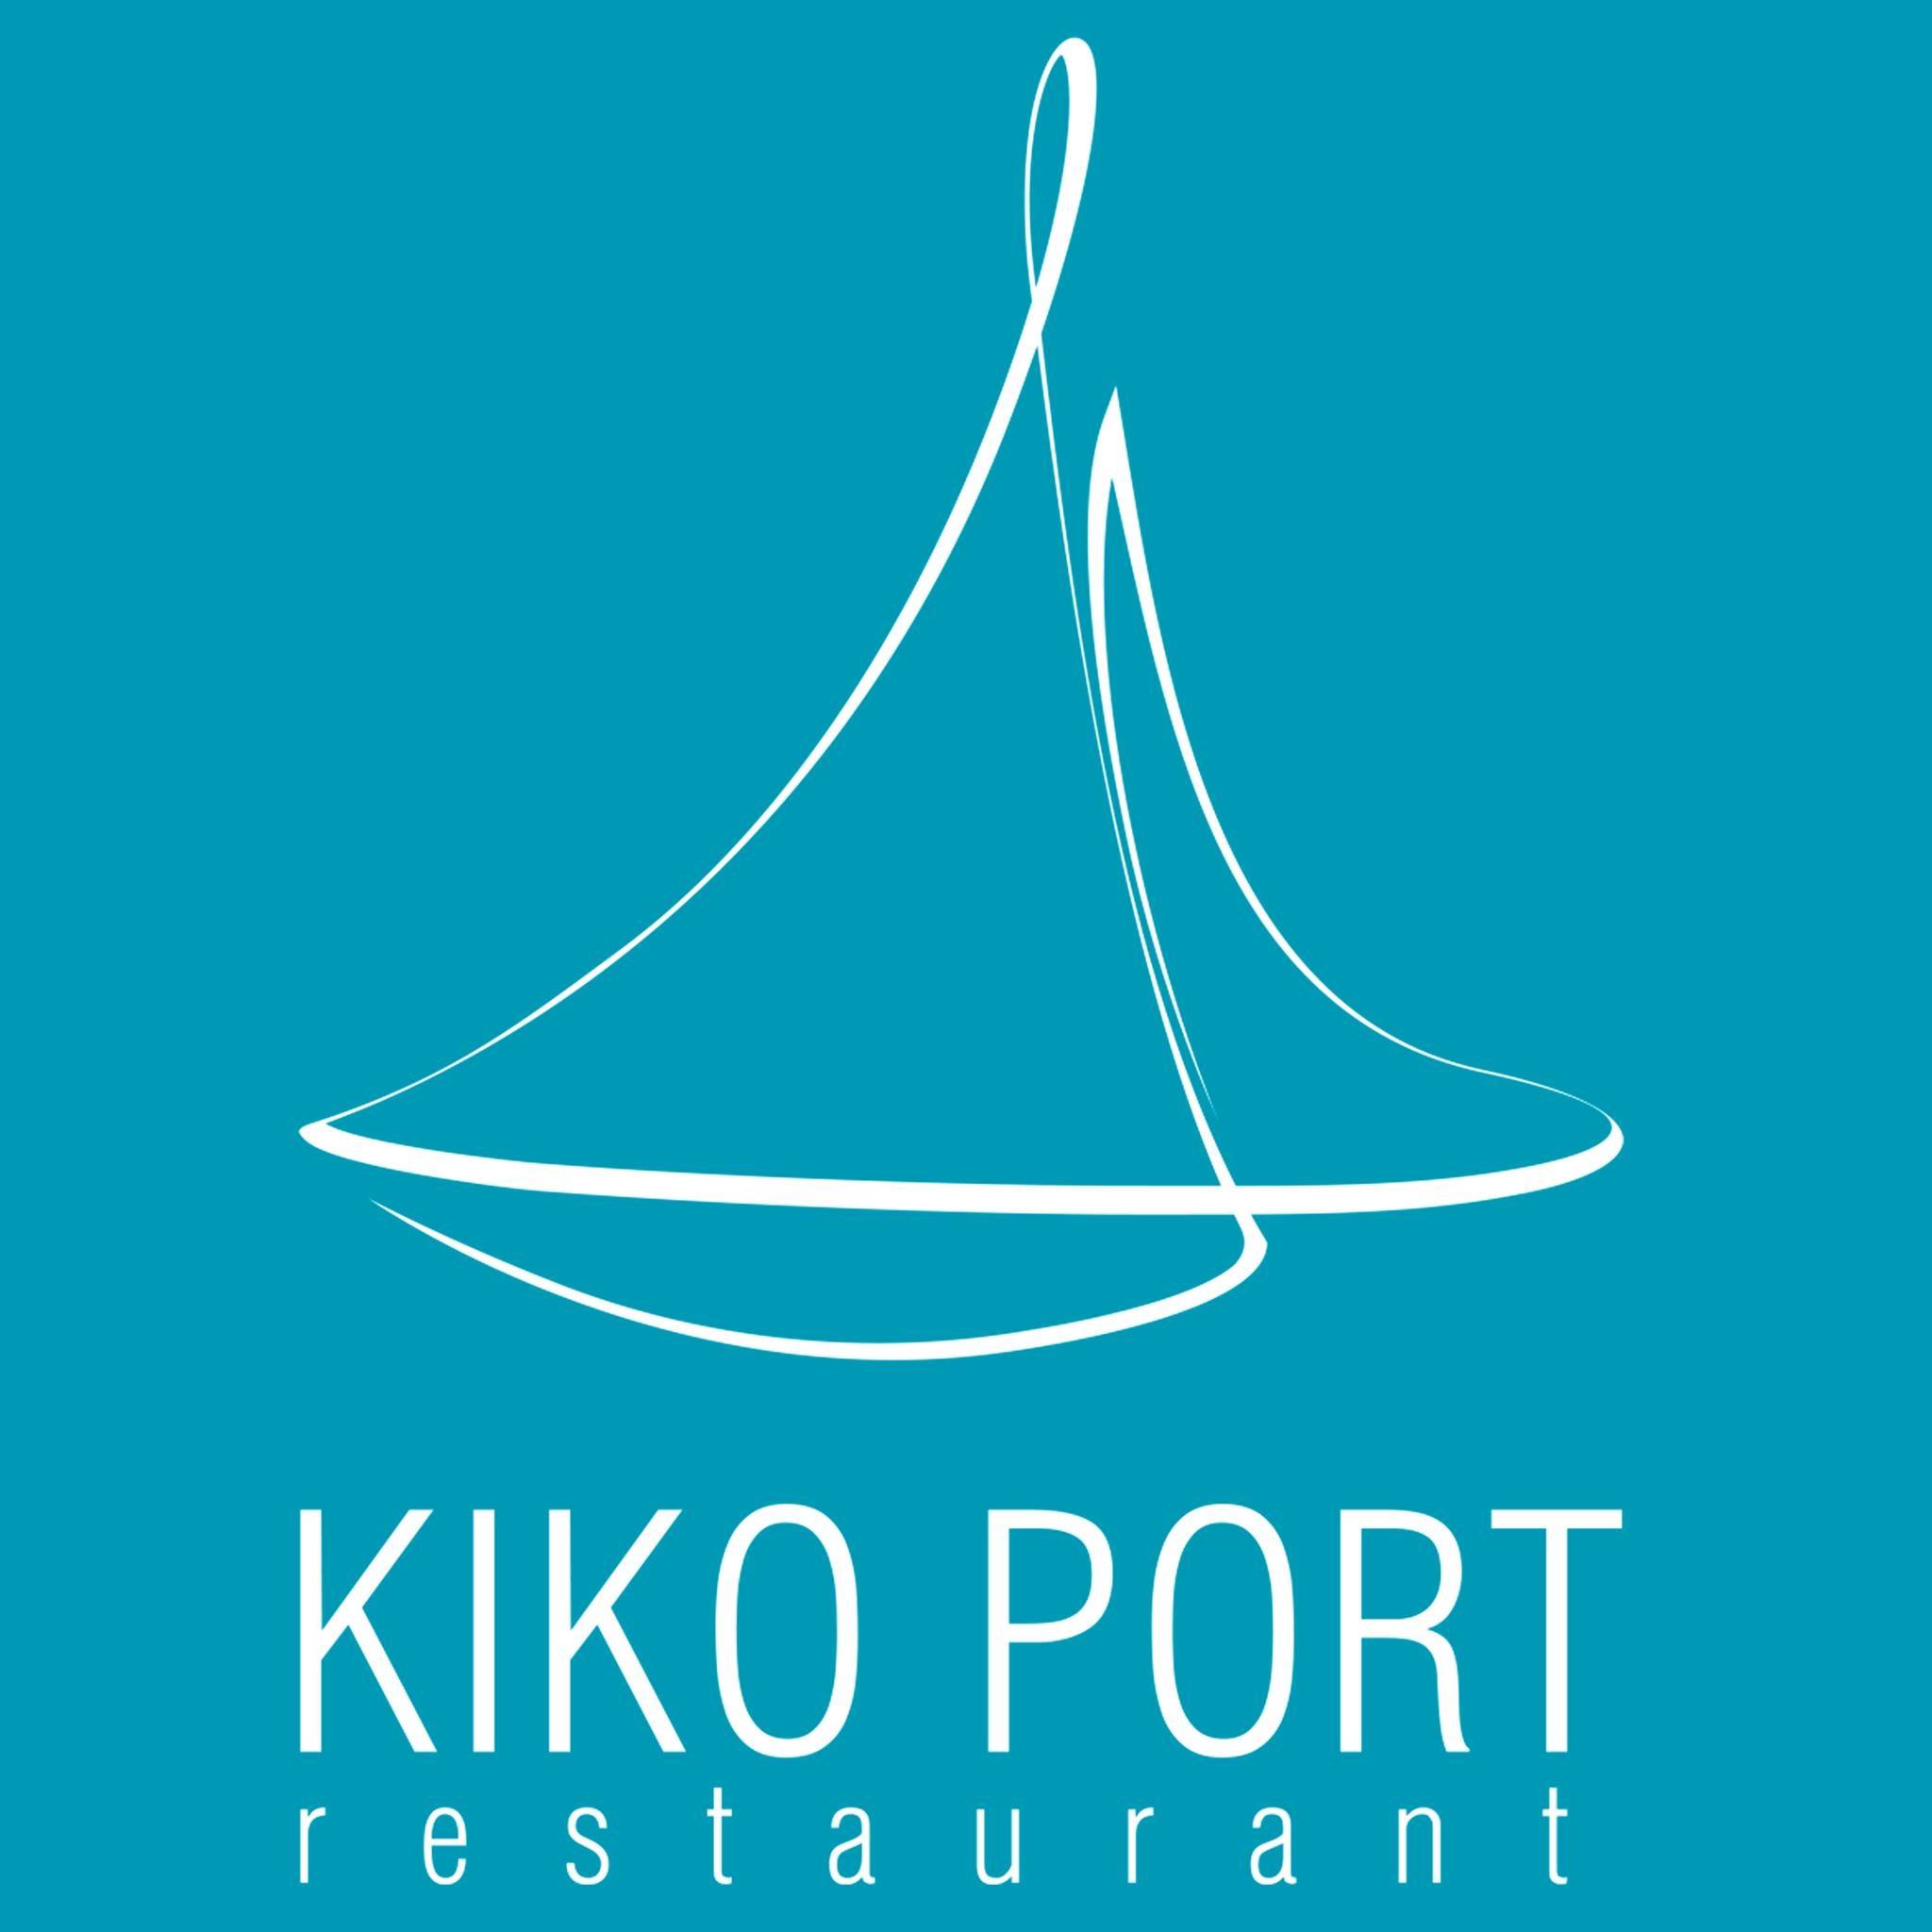 KIKO PORT restaurant